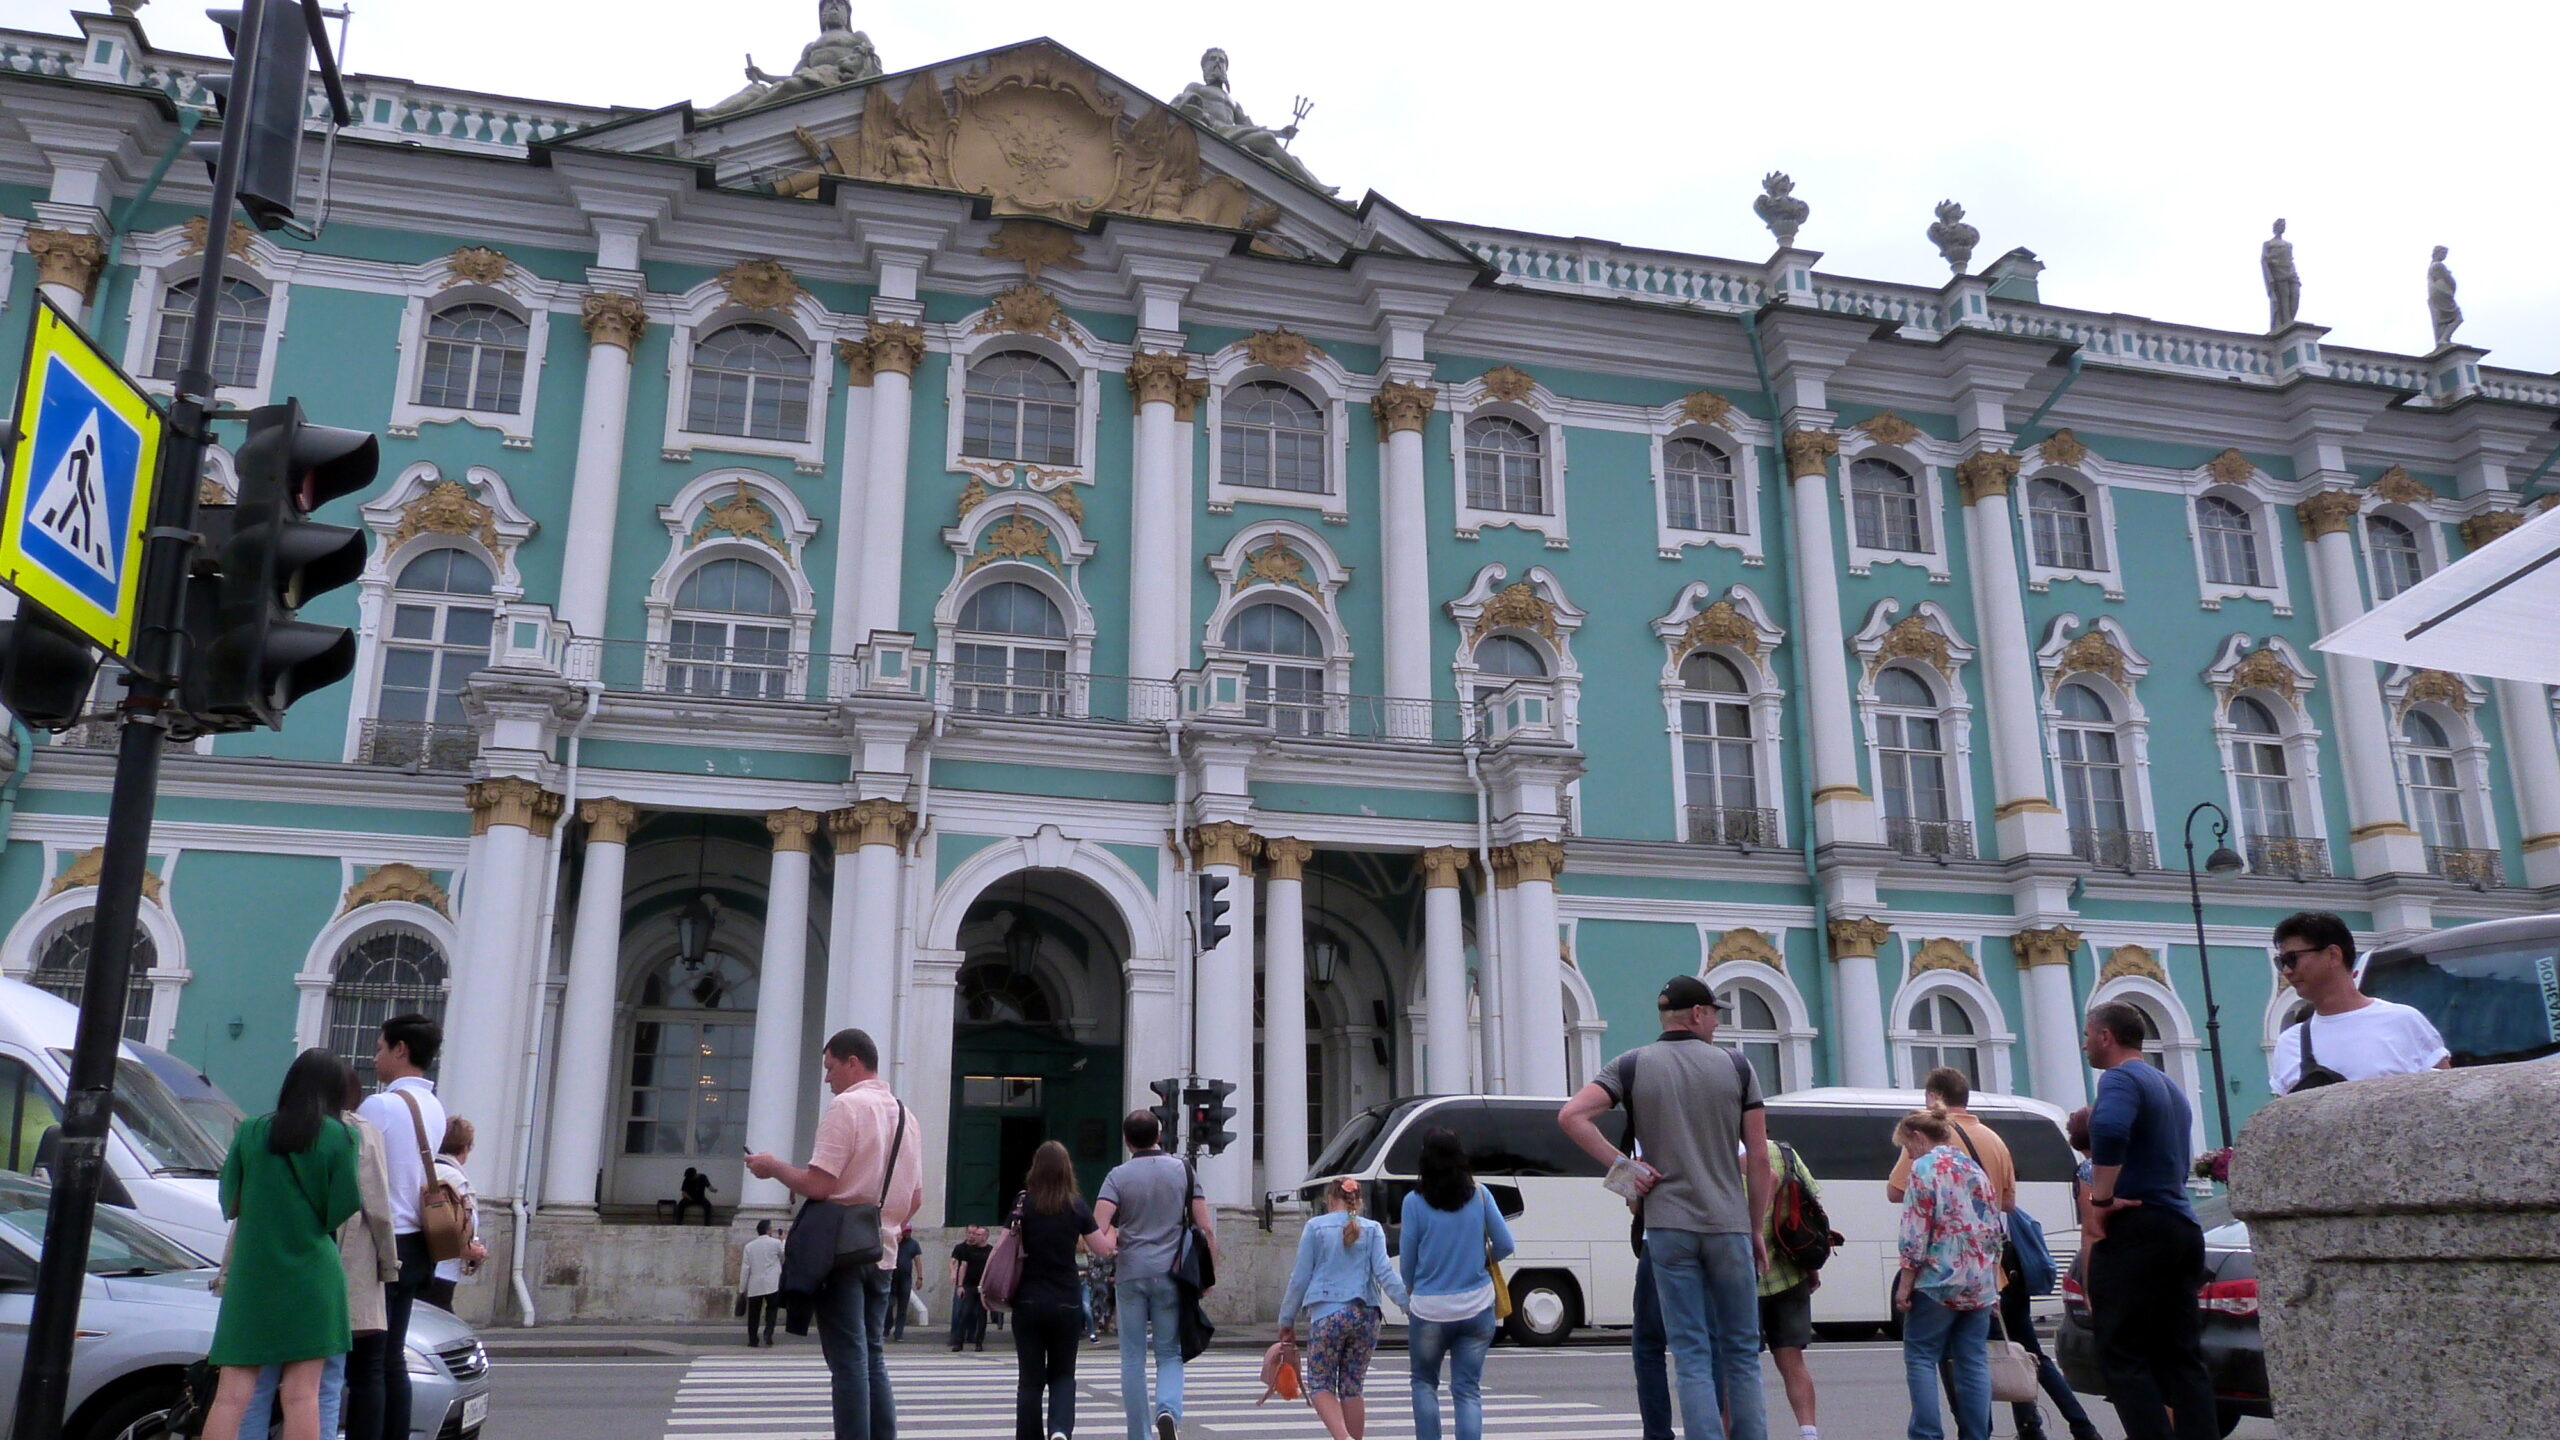 Петербургские власти запускают обязательную аттестацию, не договорившись с гидами и экскурсоводами о новых правилах